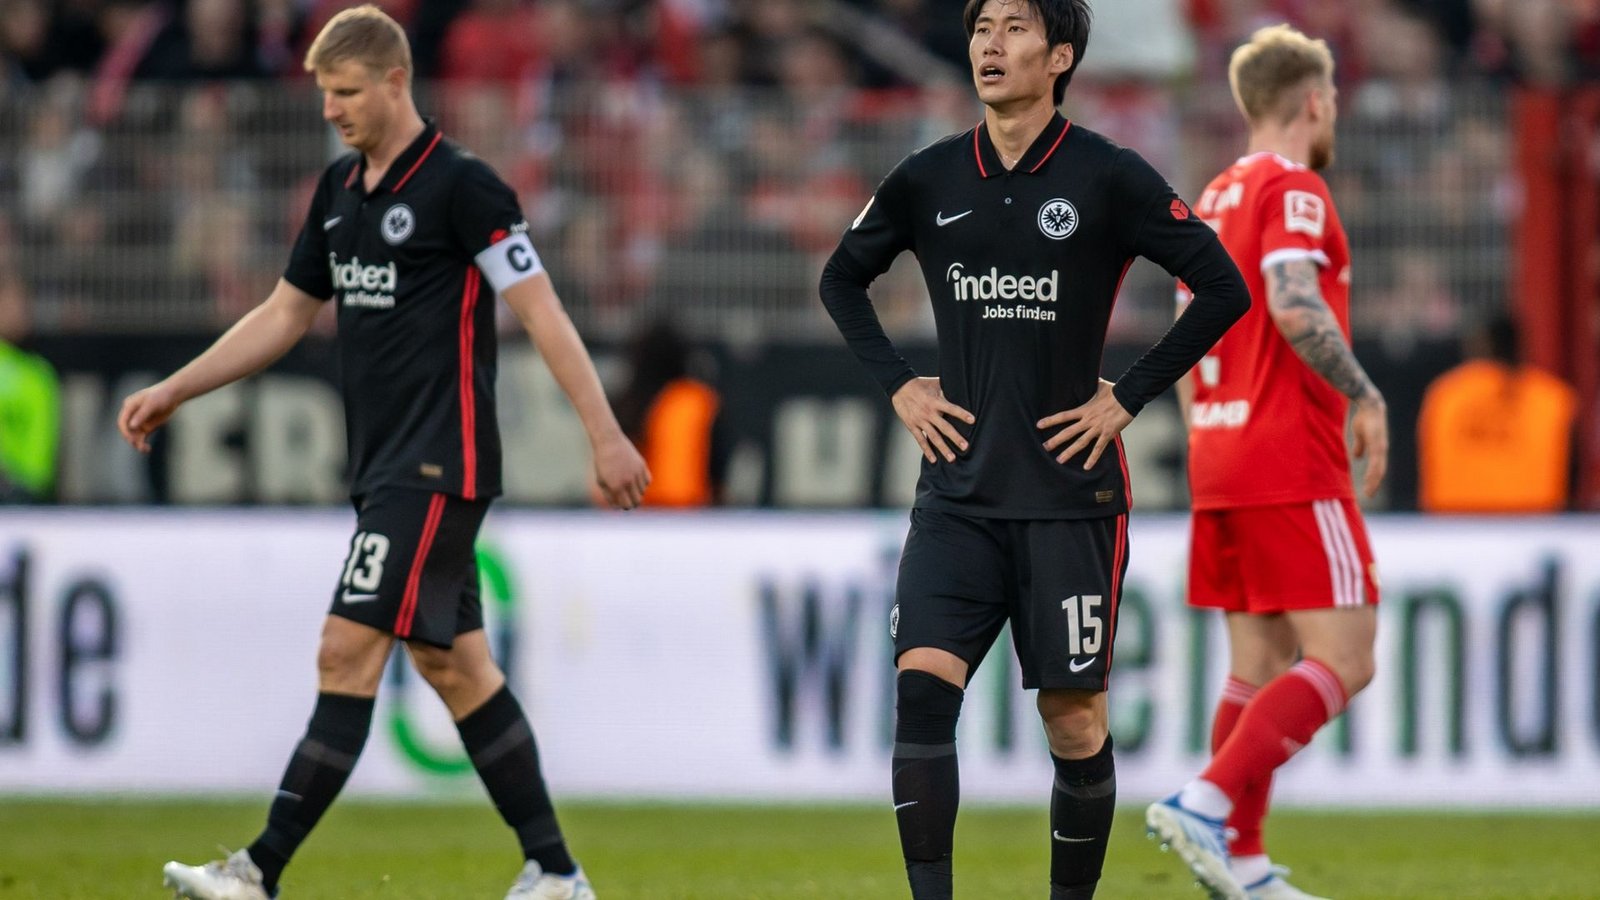 Daichi Kamada von Eintracht Frankfurt steht nach der Niederlage enttäuscht auf dem Spielfeld.Foto: Andreas Gora/dpa